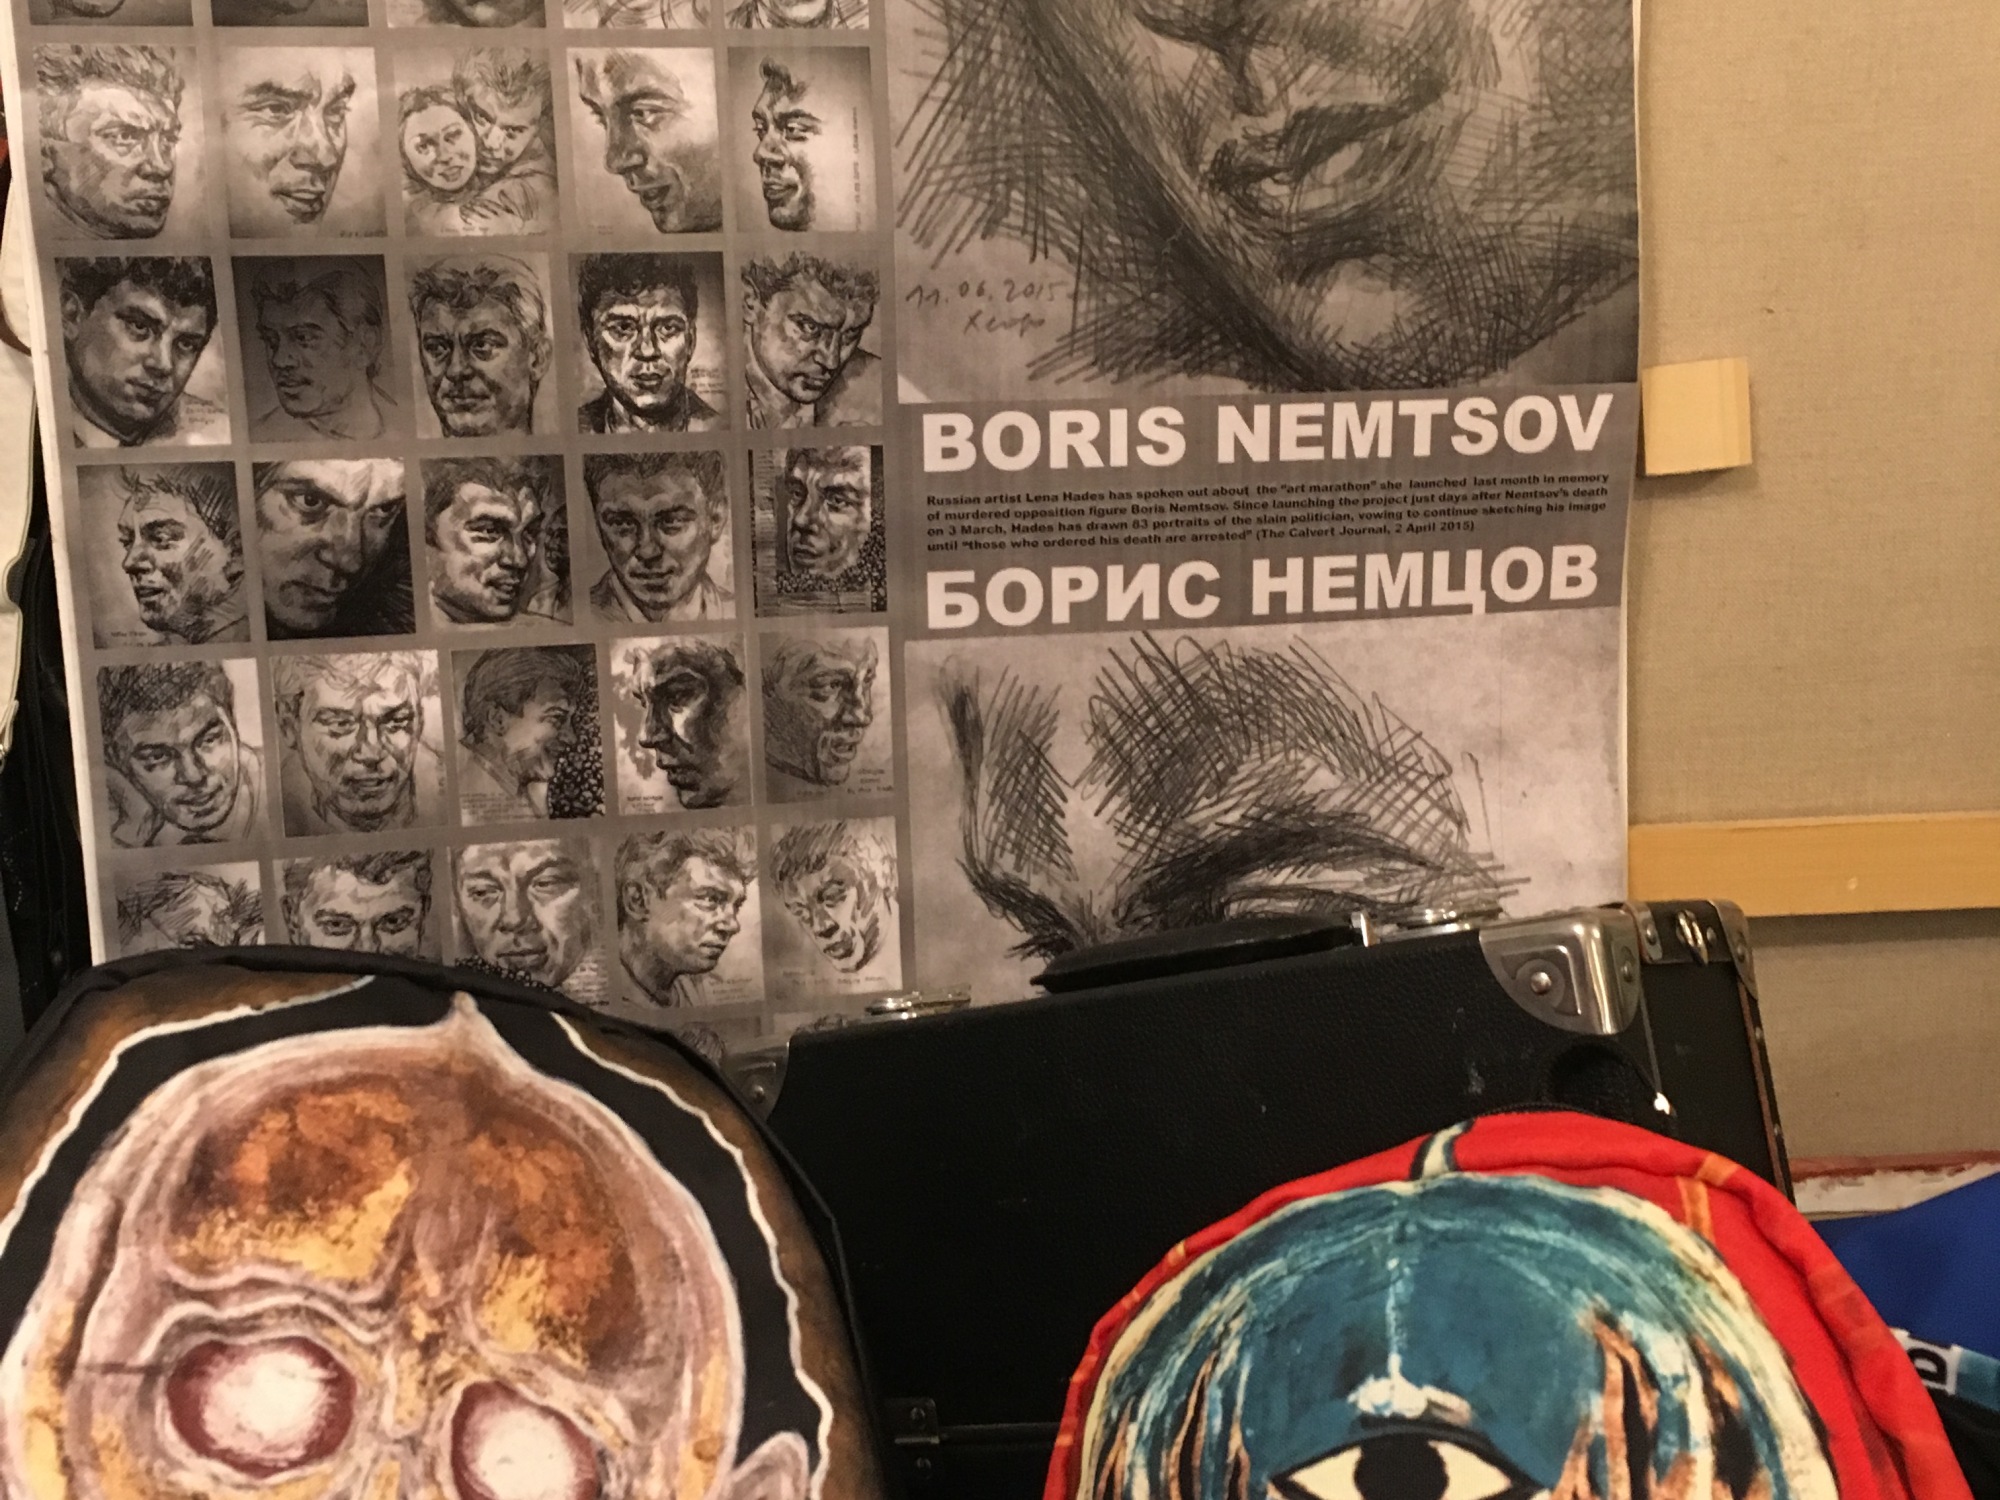 Борис Немцов, Boris Nemtsov